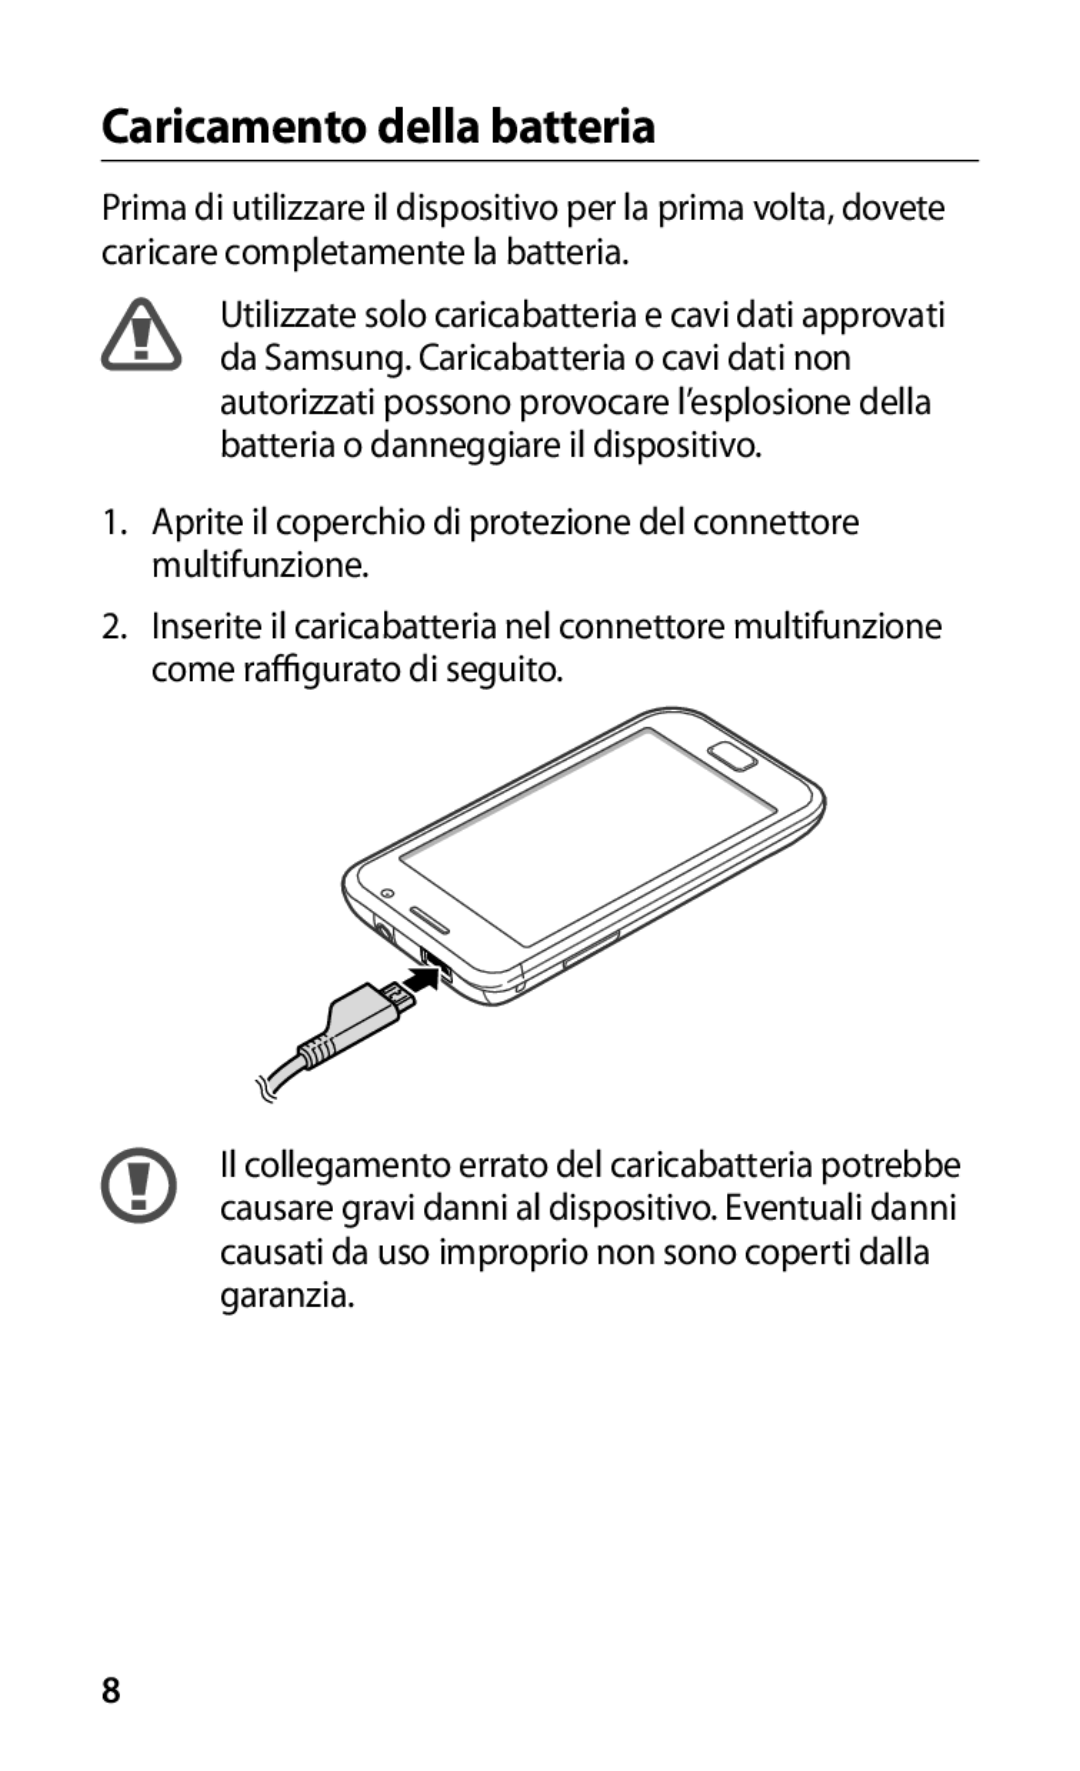 Samsung GT-I9000HKAITV manual Caricamento della batteria, Aprite il coperchio di protezione del connettore multifunzione 